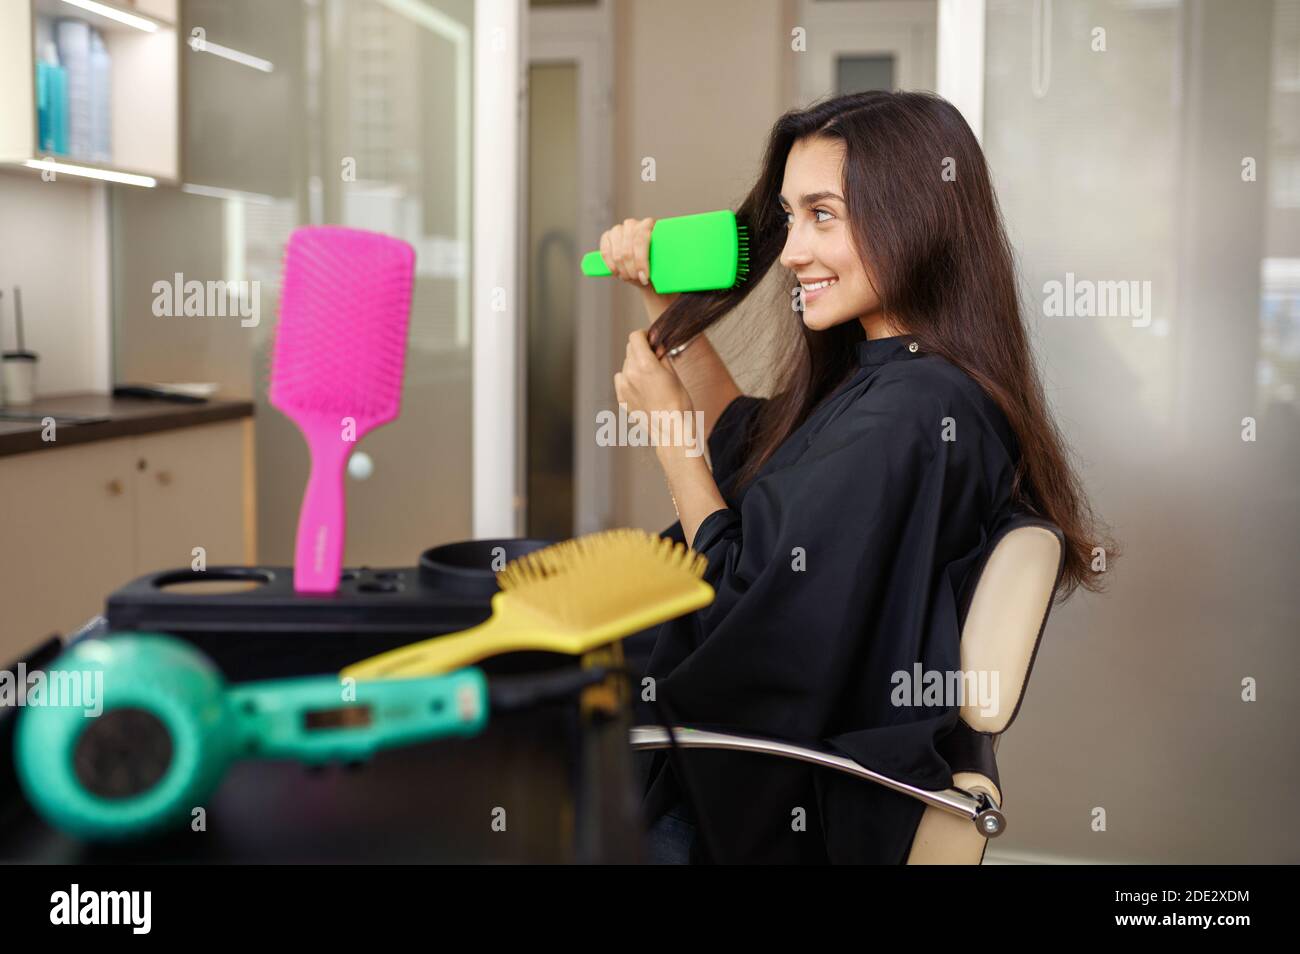 Une femme se fait coiffer dans un salon de coiffure Banque D'Images